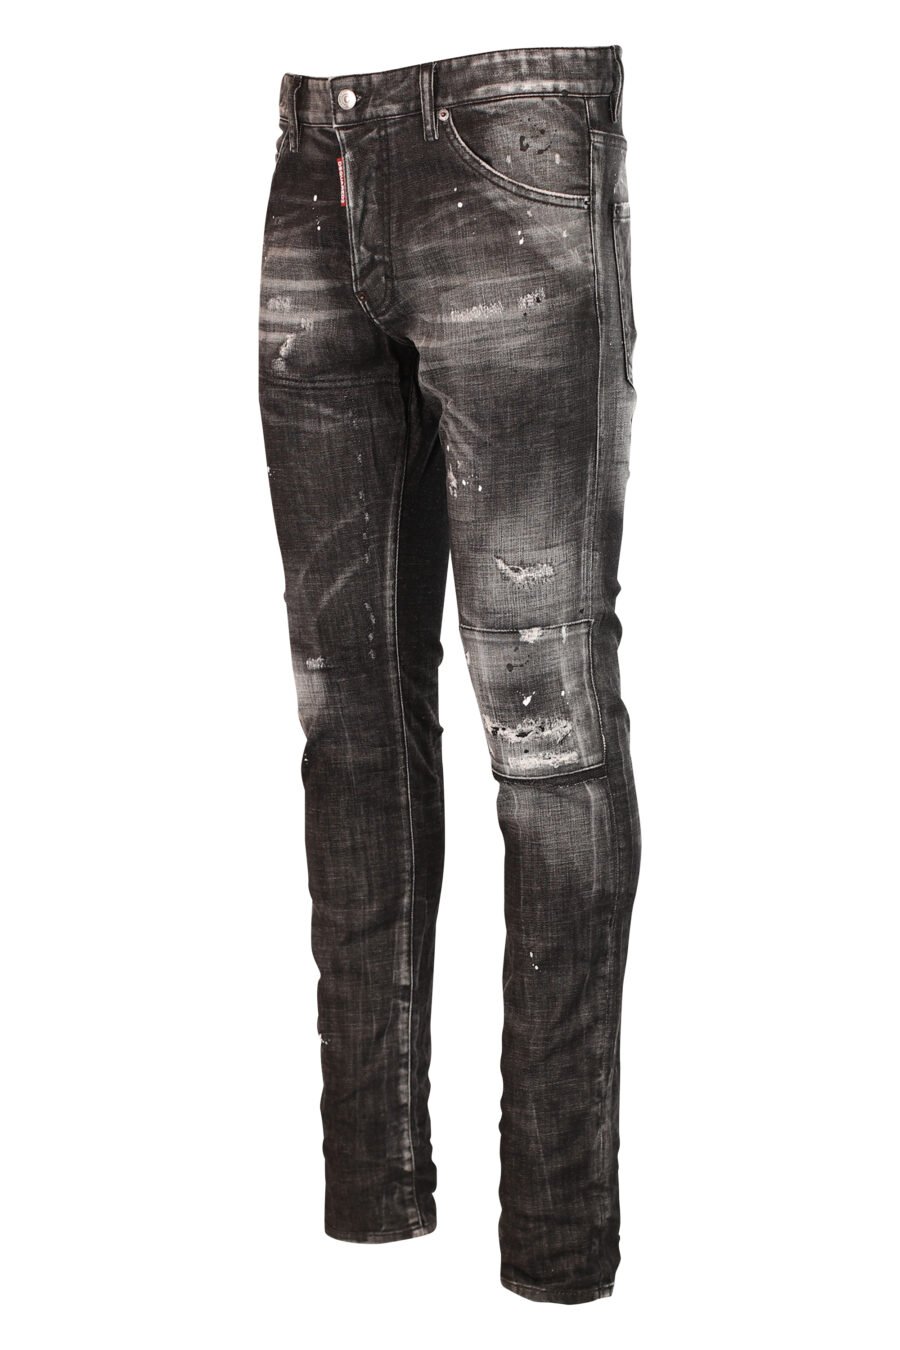 Coole Jeanshose schwarz halb getragen und zerrissen - 8052134953105 2